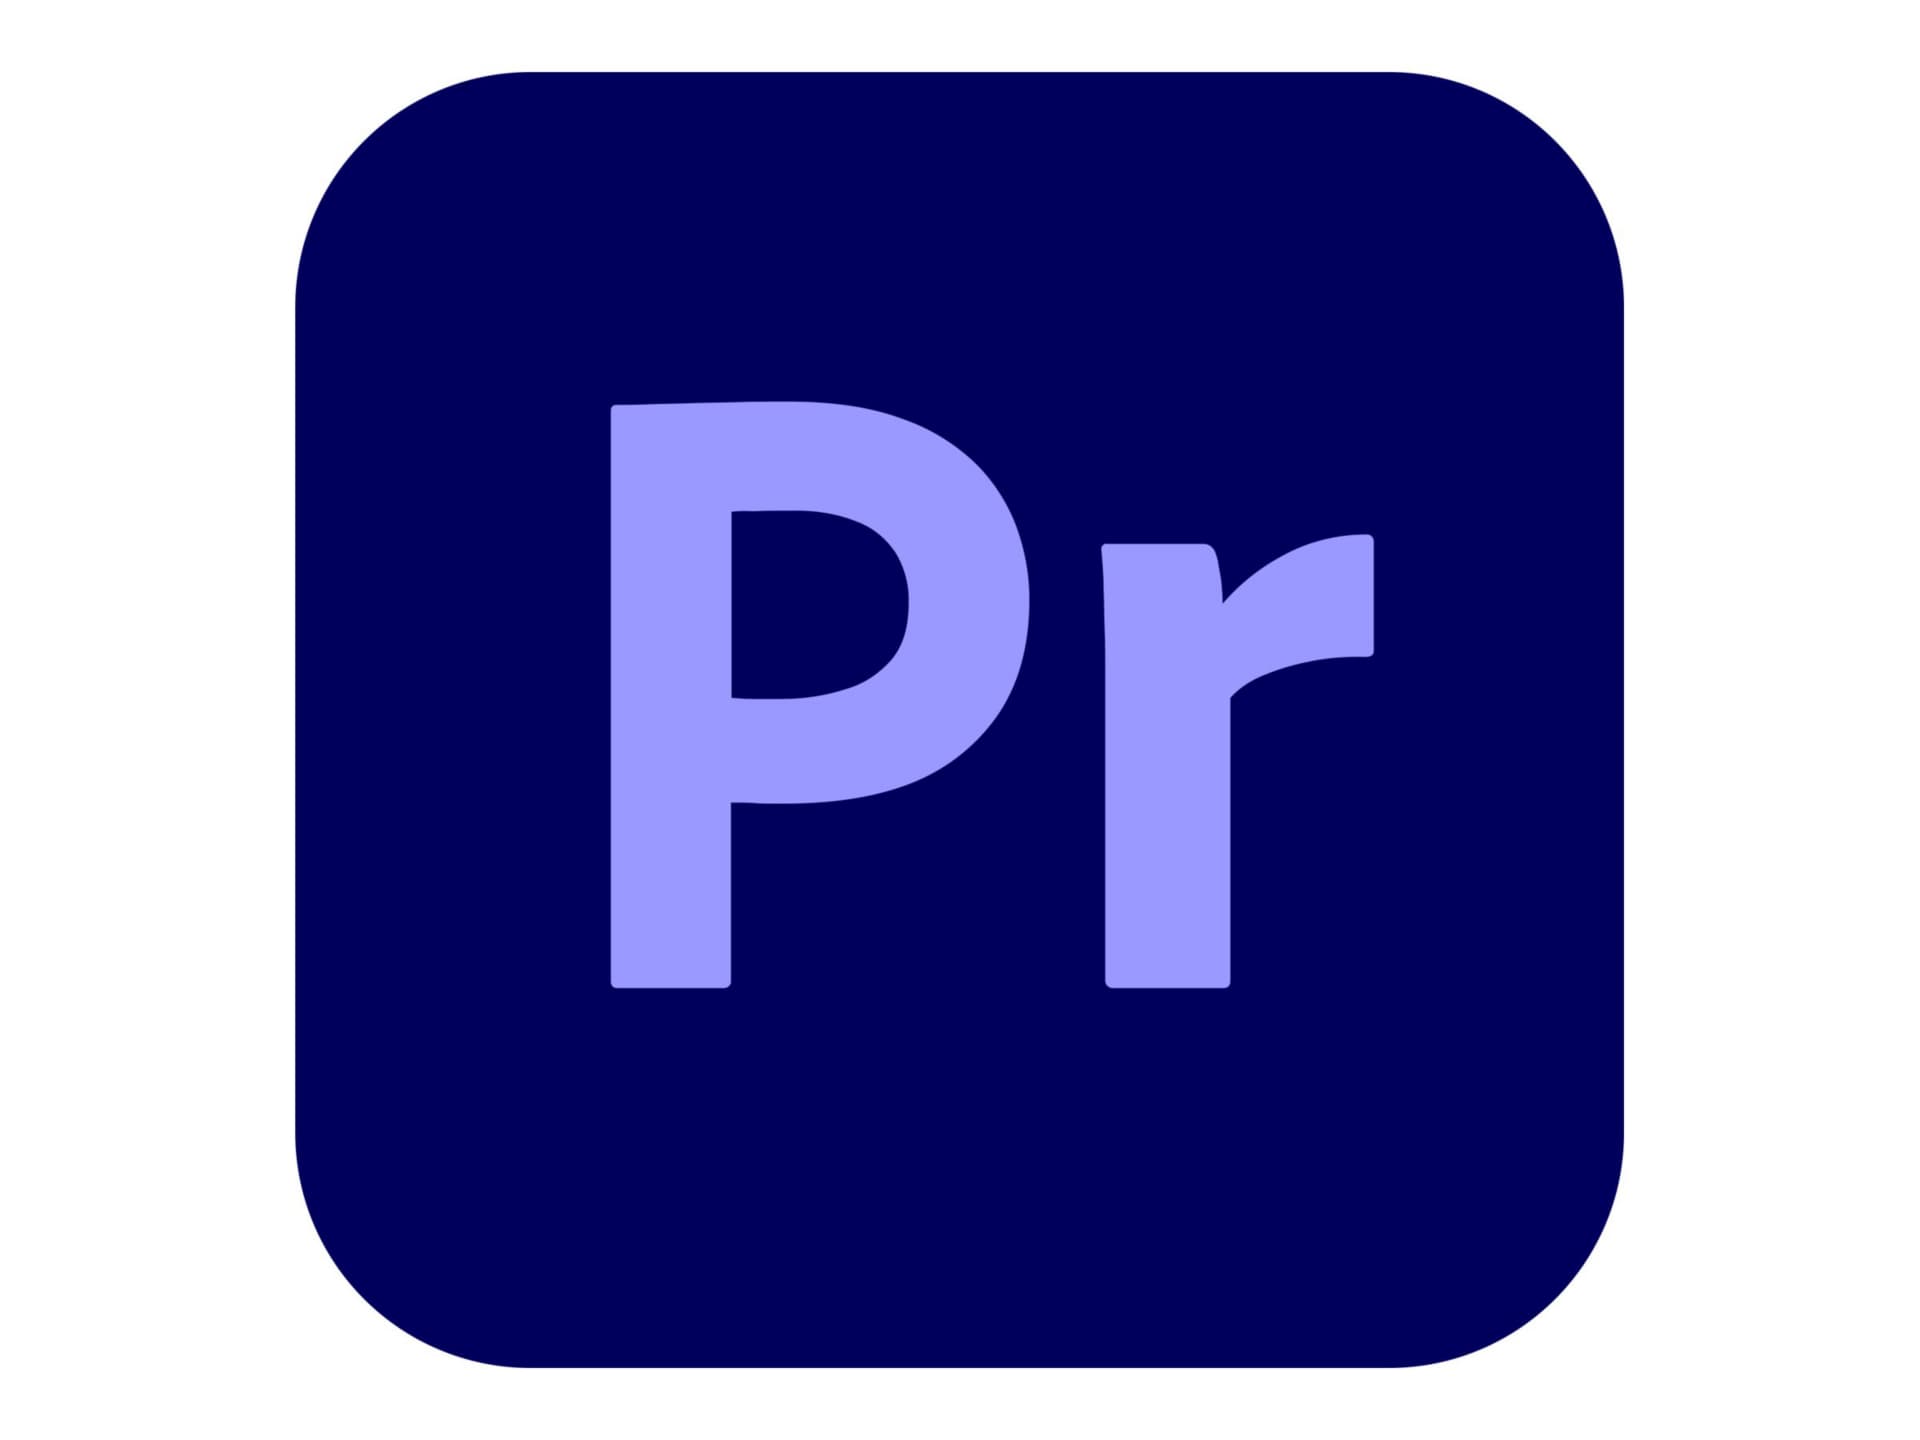 Adobe Premiere Pro CC for teams - Subscription Renewal - 1 utilisateur